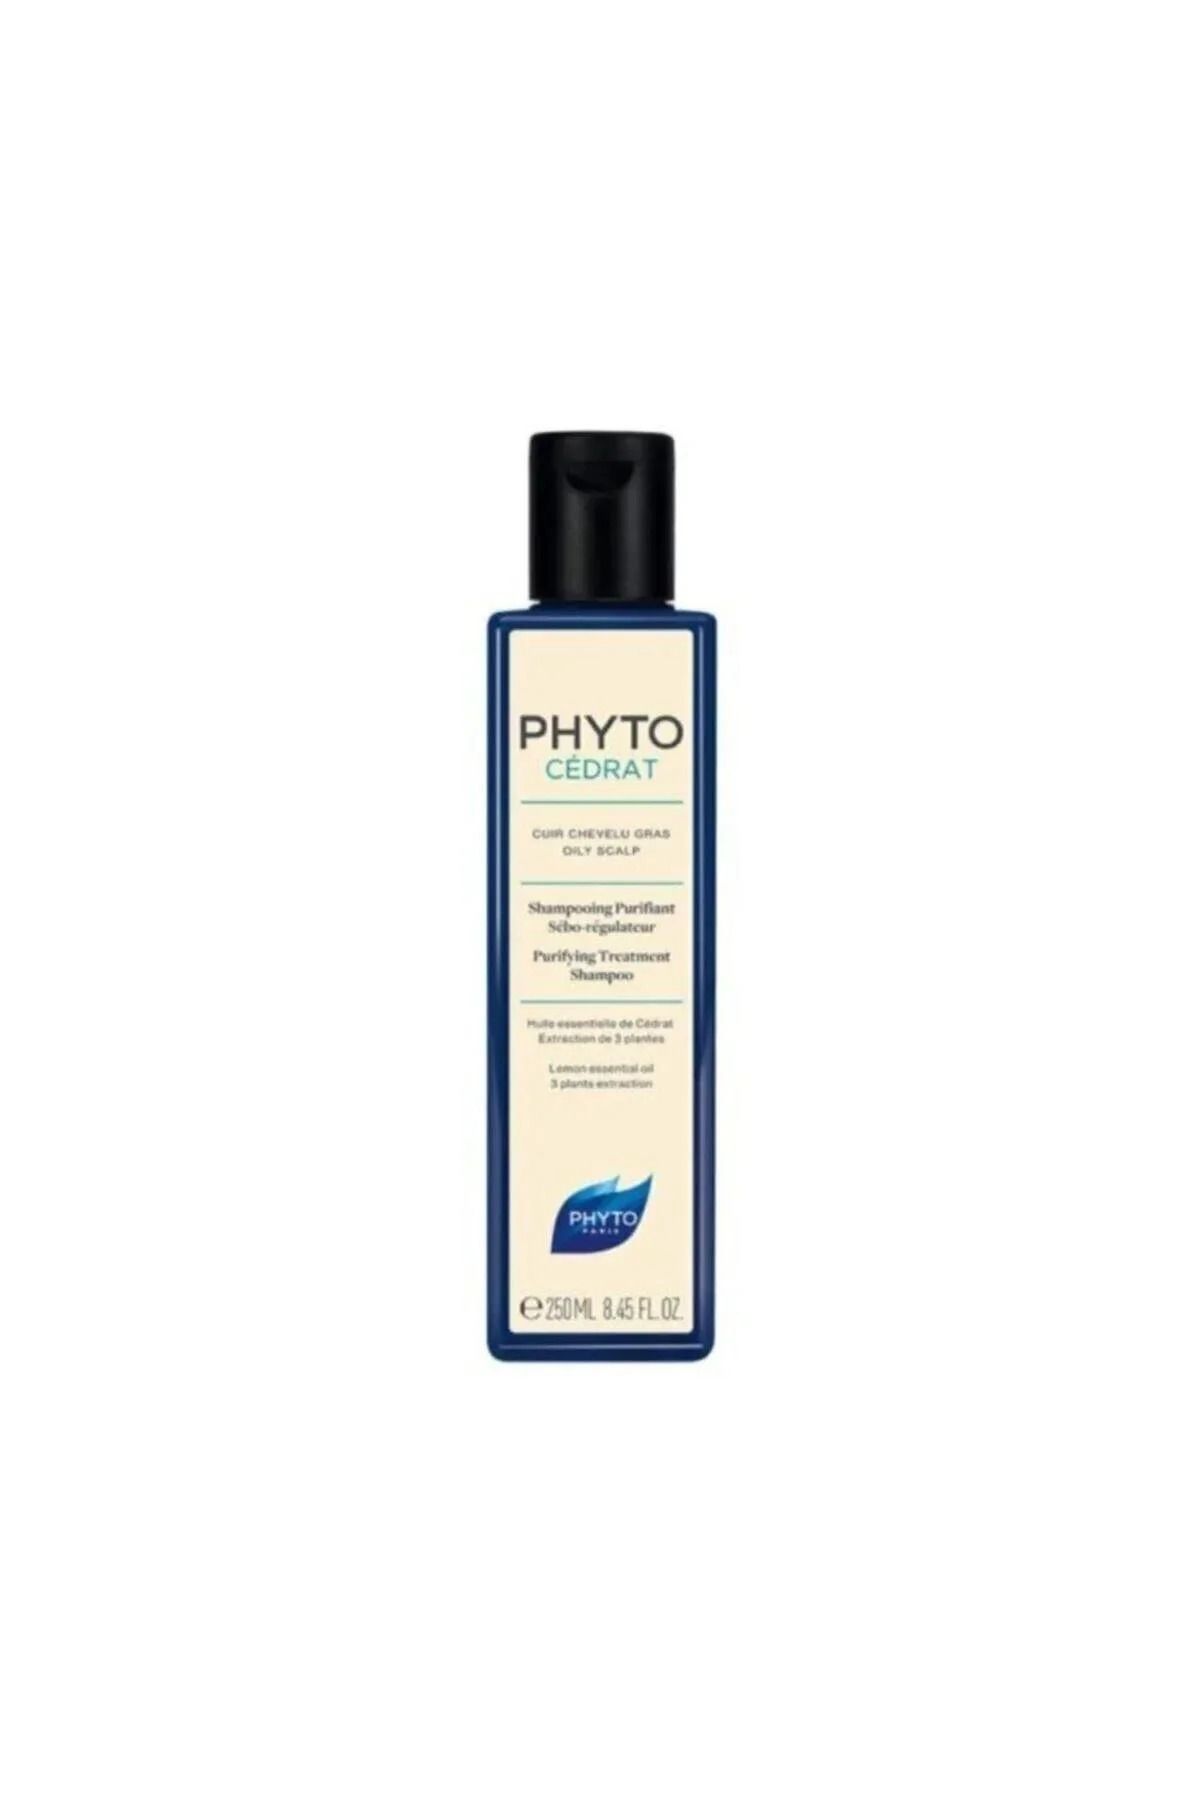 Phyto Cedrat Shampoo